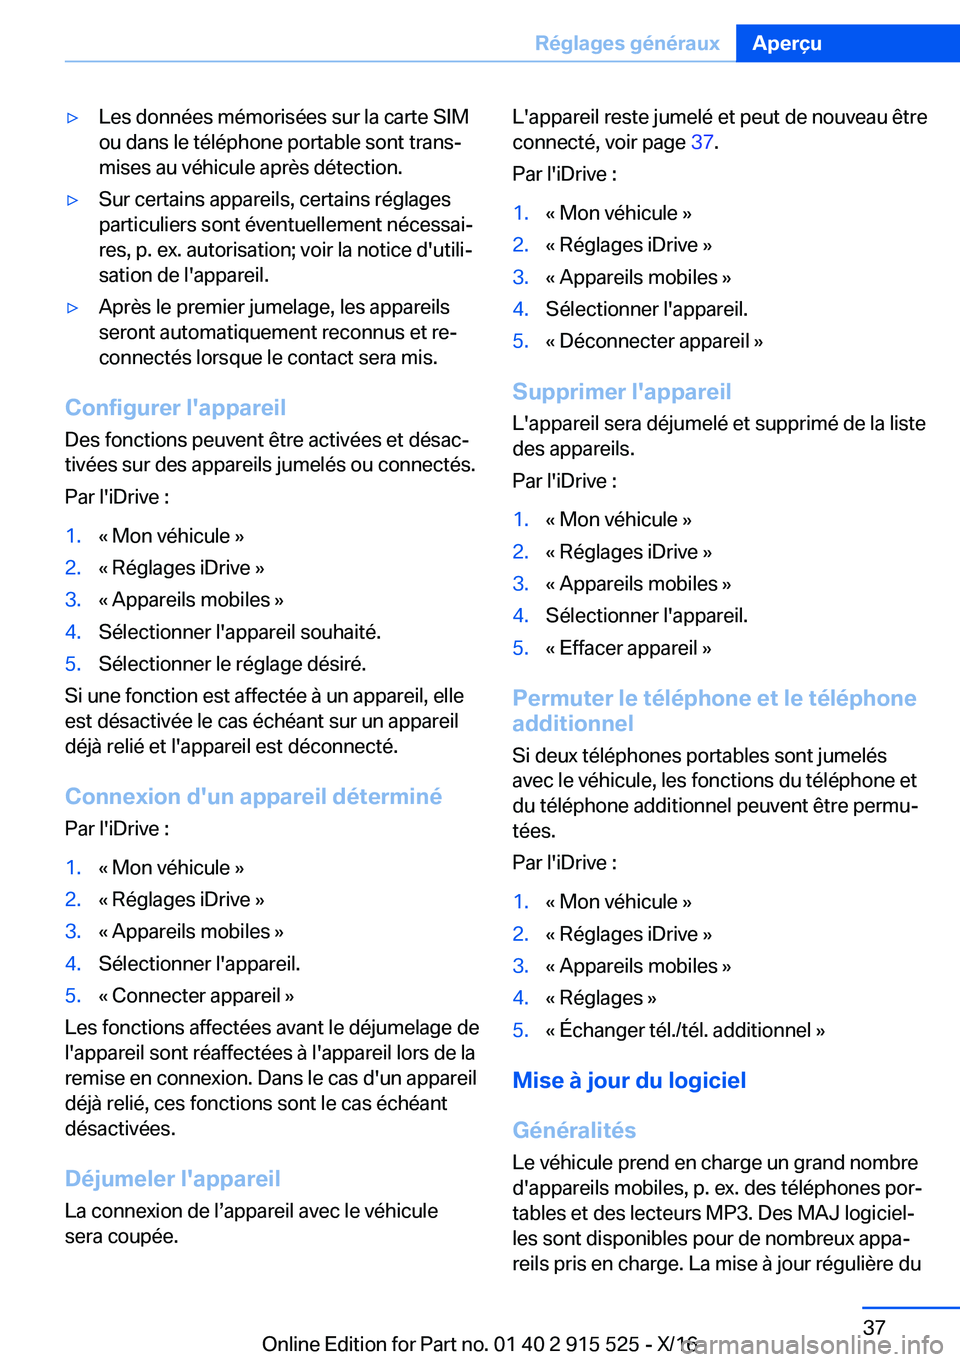 BMW X5 2017  Notices Demploi (in French) 'y�L�e�s� �d�o�n�n�é�e�s� �m�é�m�o�r�i�s�é�e�s� �s�u�r� �l�a� �c�a�r�t�e� �S�I�M
�o�u� �d�a�n�s� �l�e� �t�é�l�é�p�h�o�n�e� �p�o�r�t�a�b�l�e� �s�o�n�t� �t�r�a�n�sj �m�i�s�e�s� �a�u� �v�é�h�i